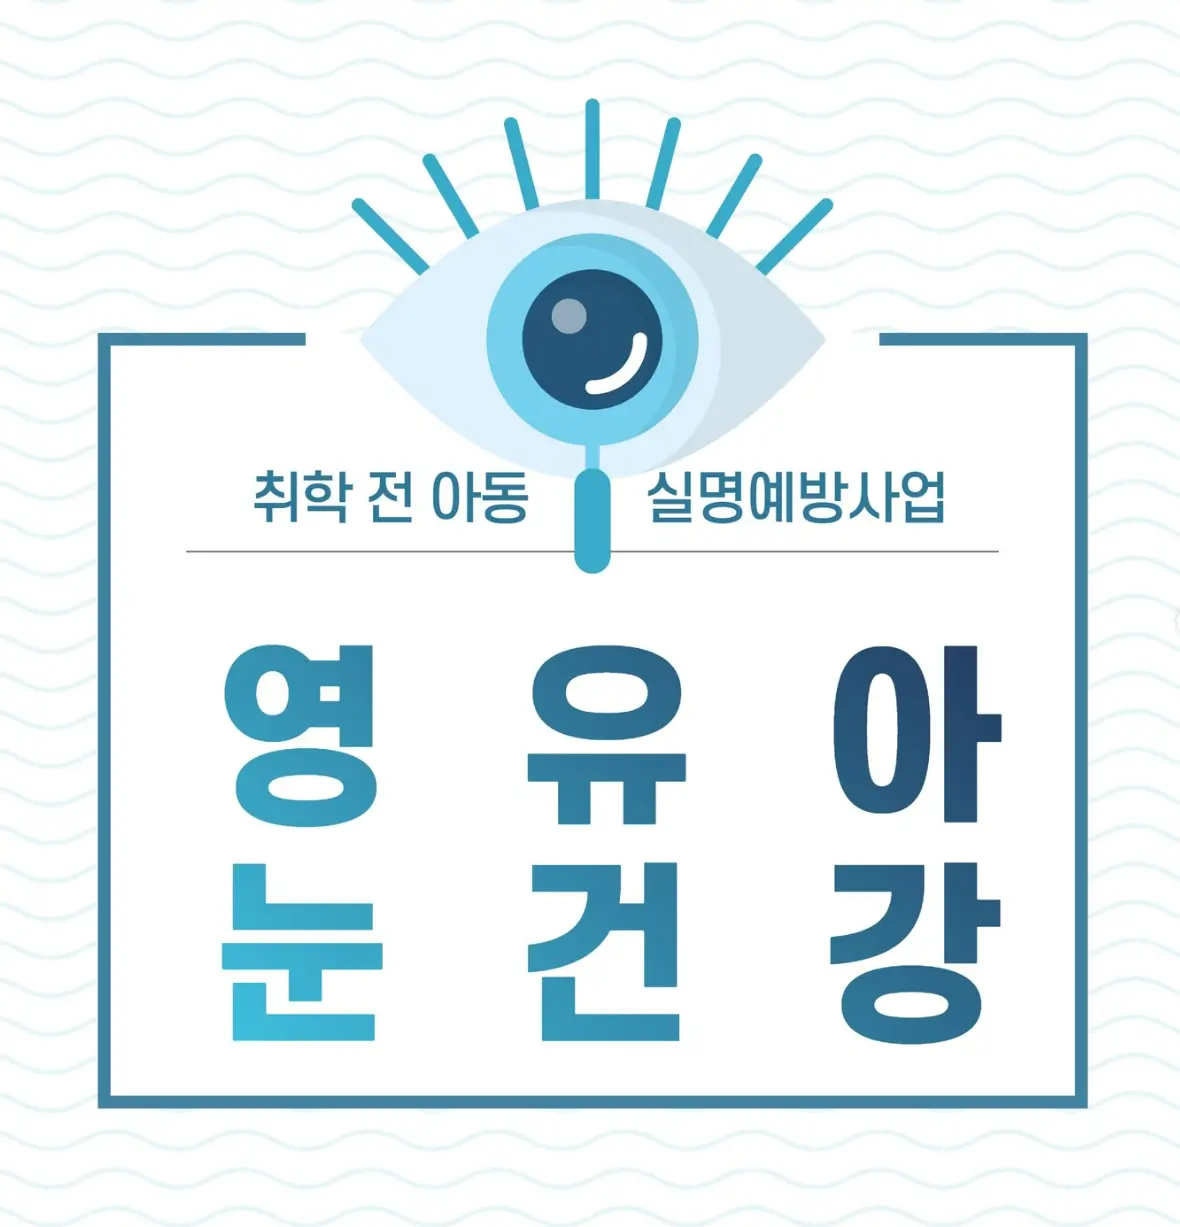 영유아 눈건강 홍보 및 상담(출처: 영유아 눈건강 인스타그램) 썸네일